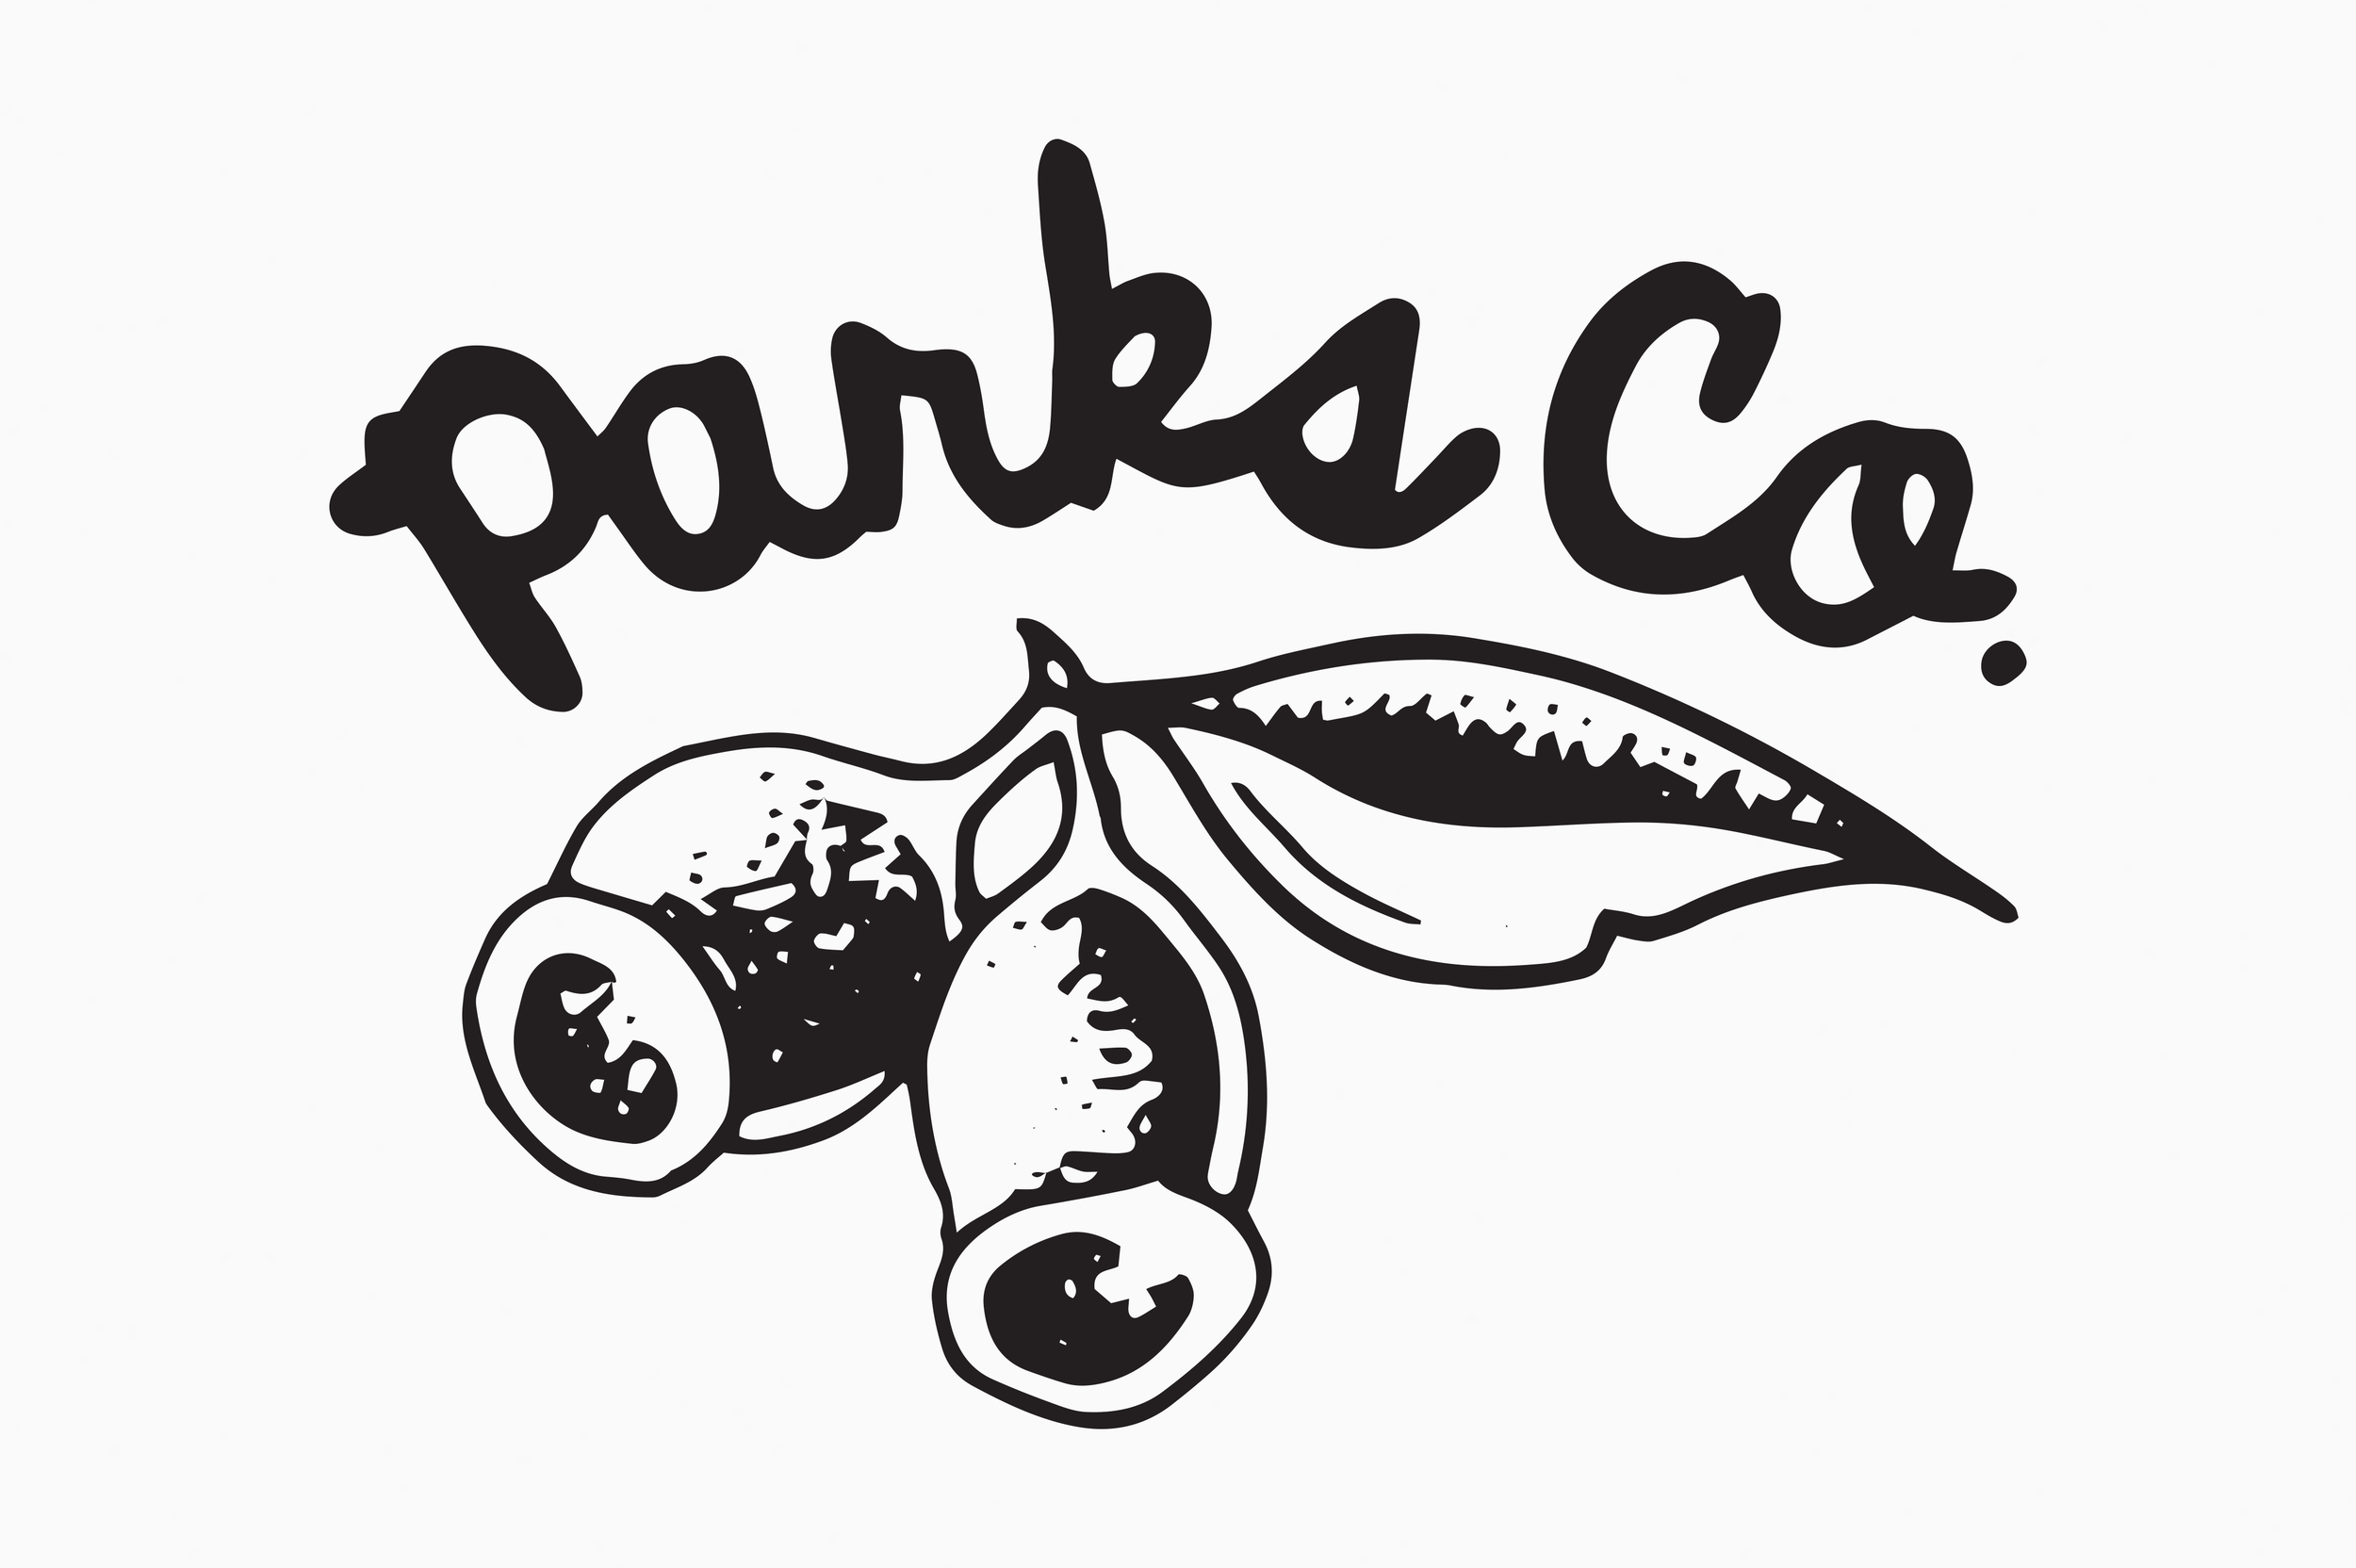 Parks Co.